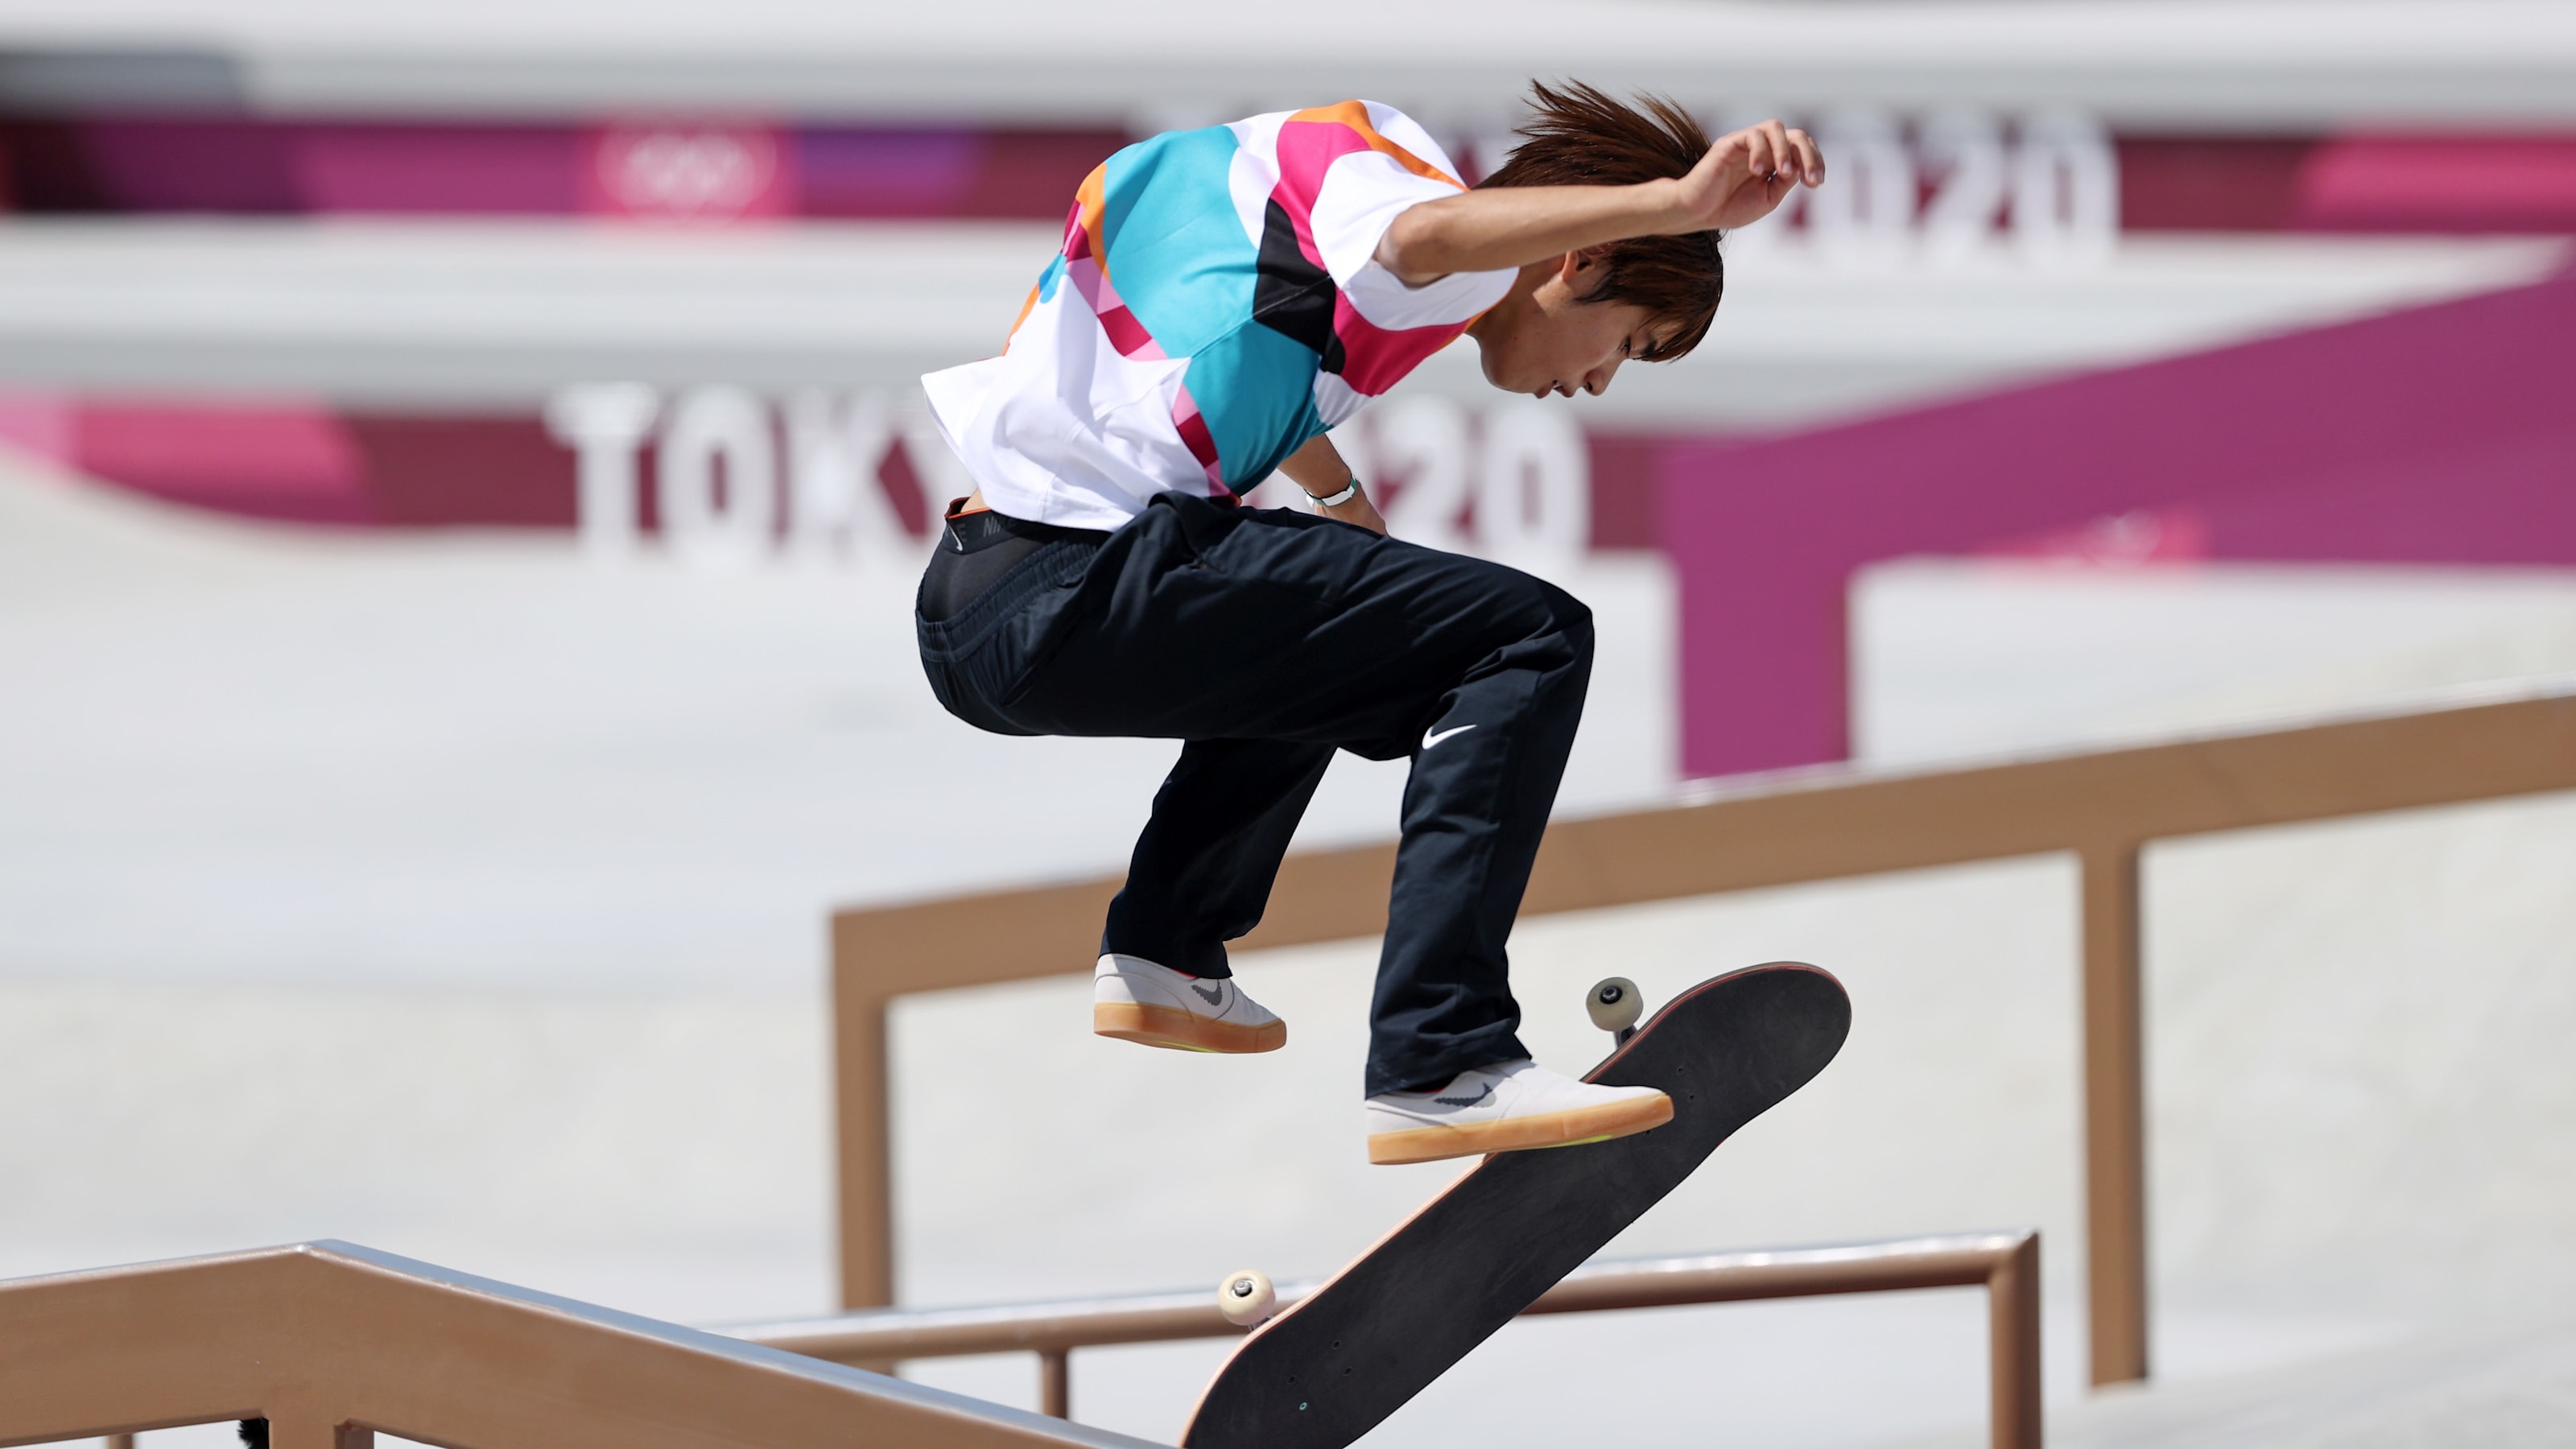 4月22日開幕 X Games Chiba 22男子スケートボードの日程 放送予定 ストリートにtokyo金 堀米雄斗出場